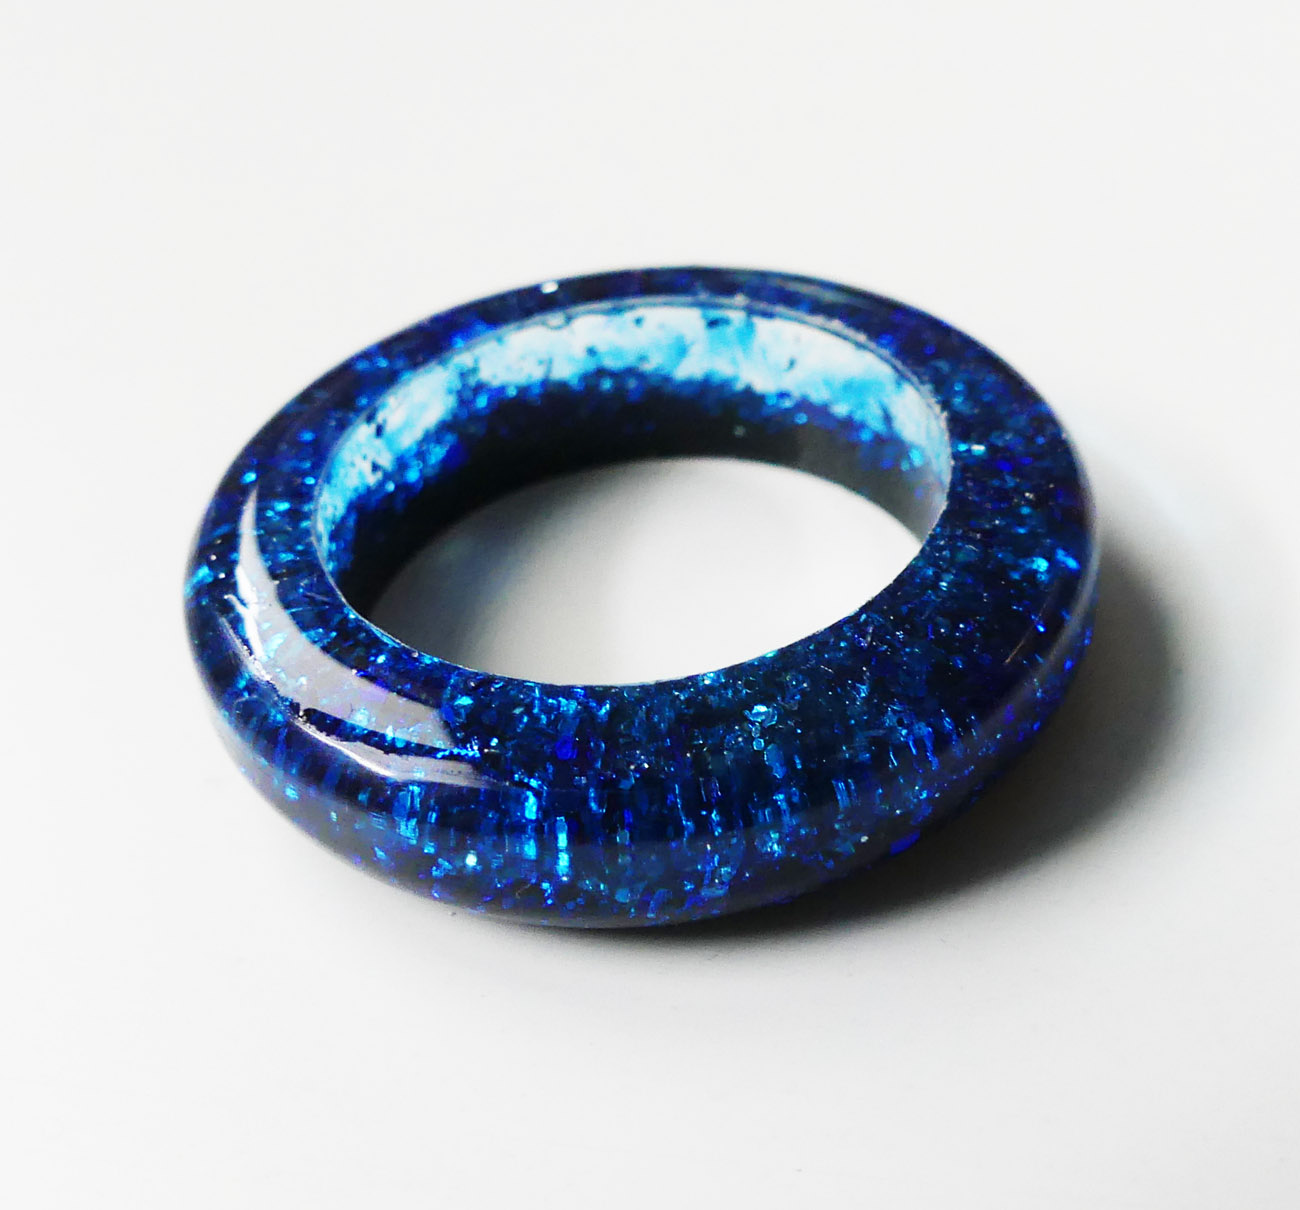 Živicový prsteň s modrými a čiernymi trblietkami